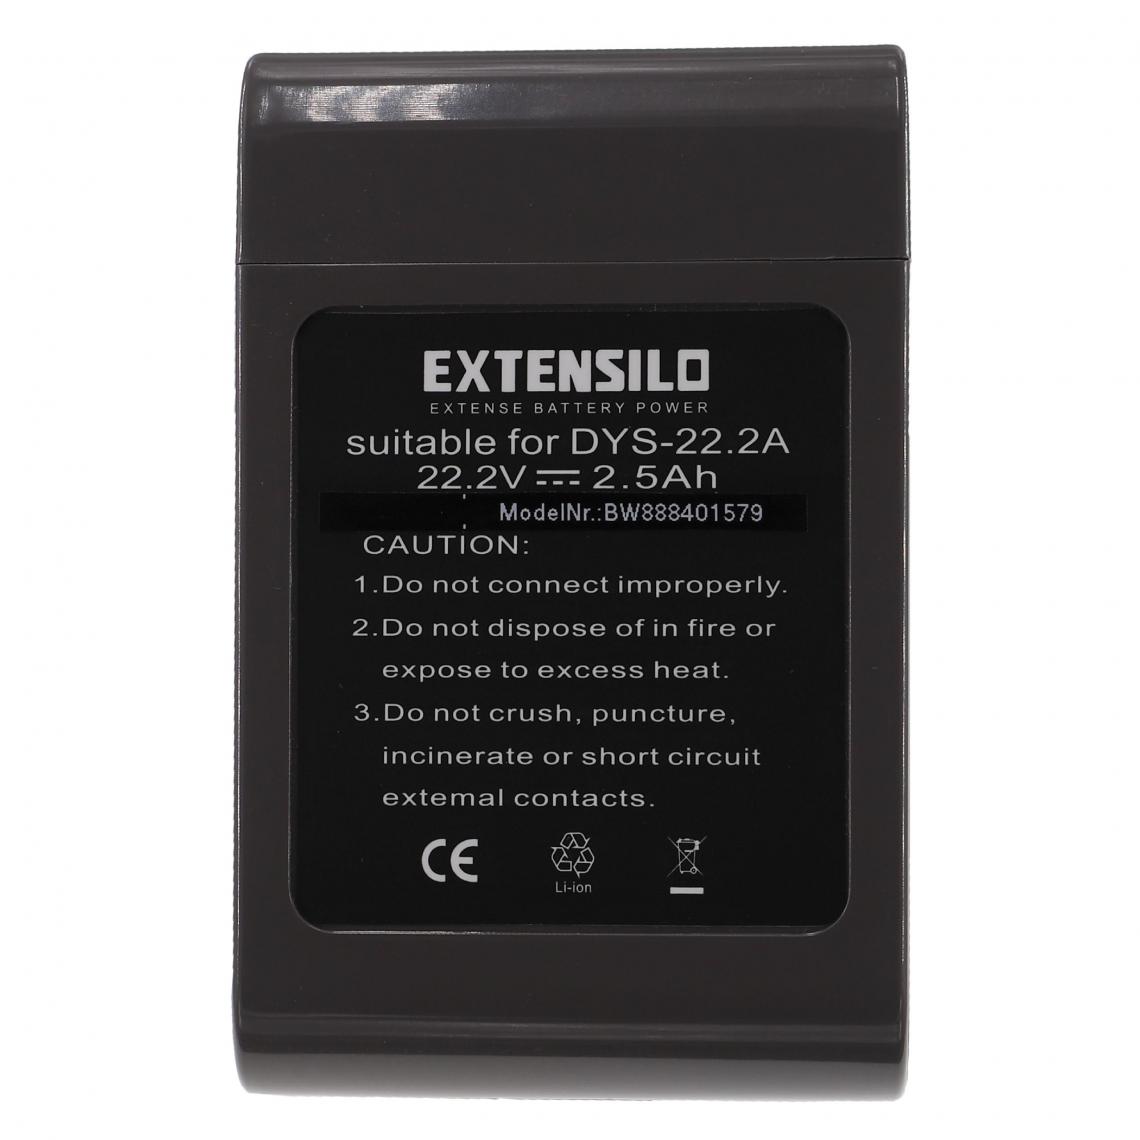 Vhbw - EXTENSILO Batterie compatible avec Dyson DC45, DC43, DC43h Animalpro, DC35 Multi Floor aspirateur, robot électroménager (2500mAh, 22,2V, Li-ion) - Accessoire entretien des sols